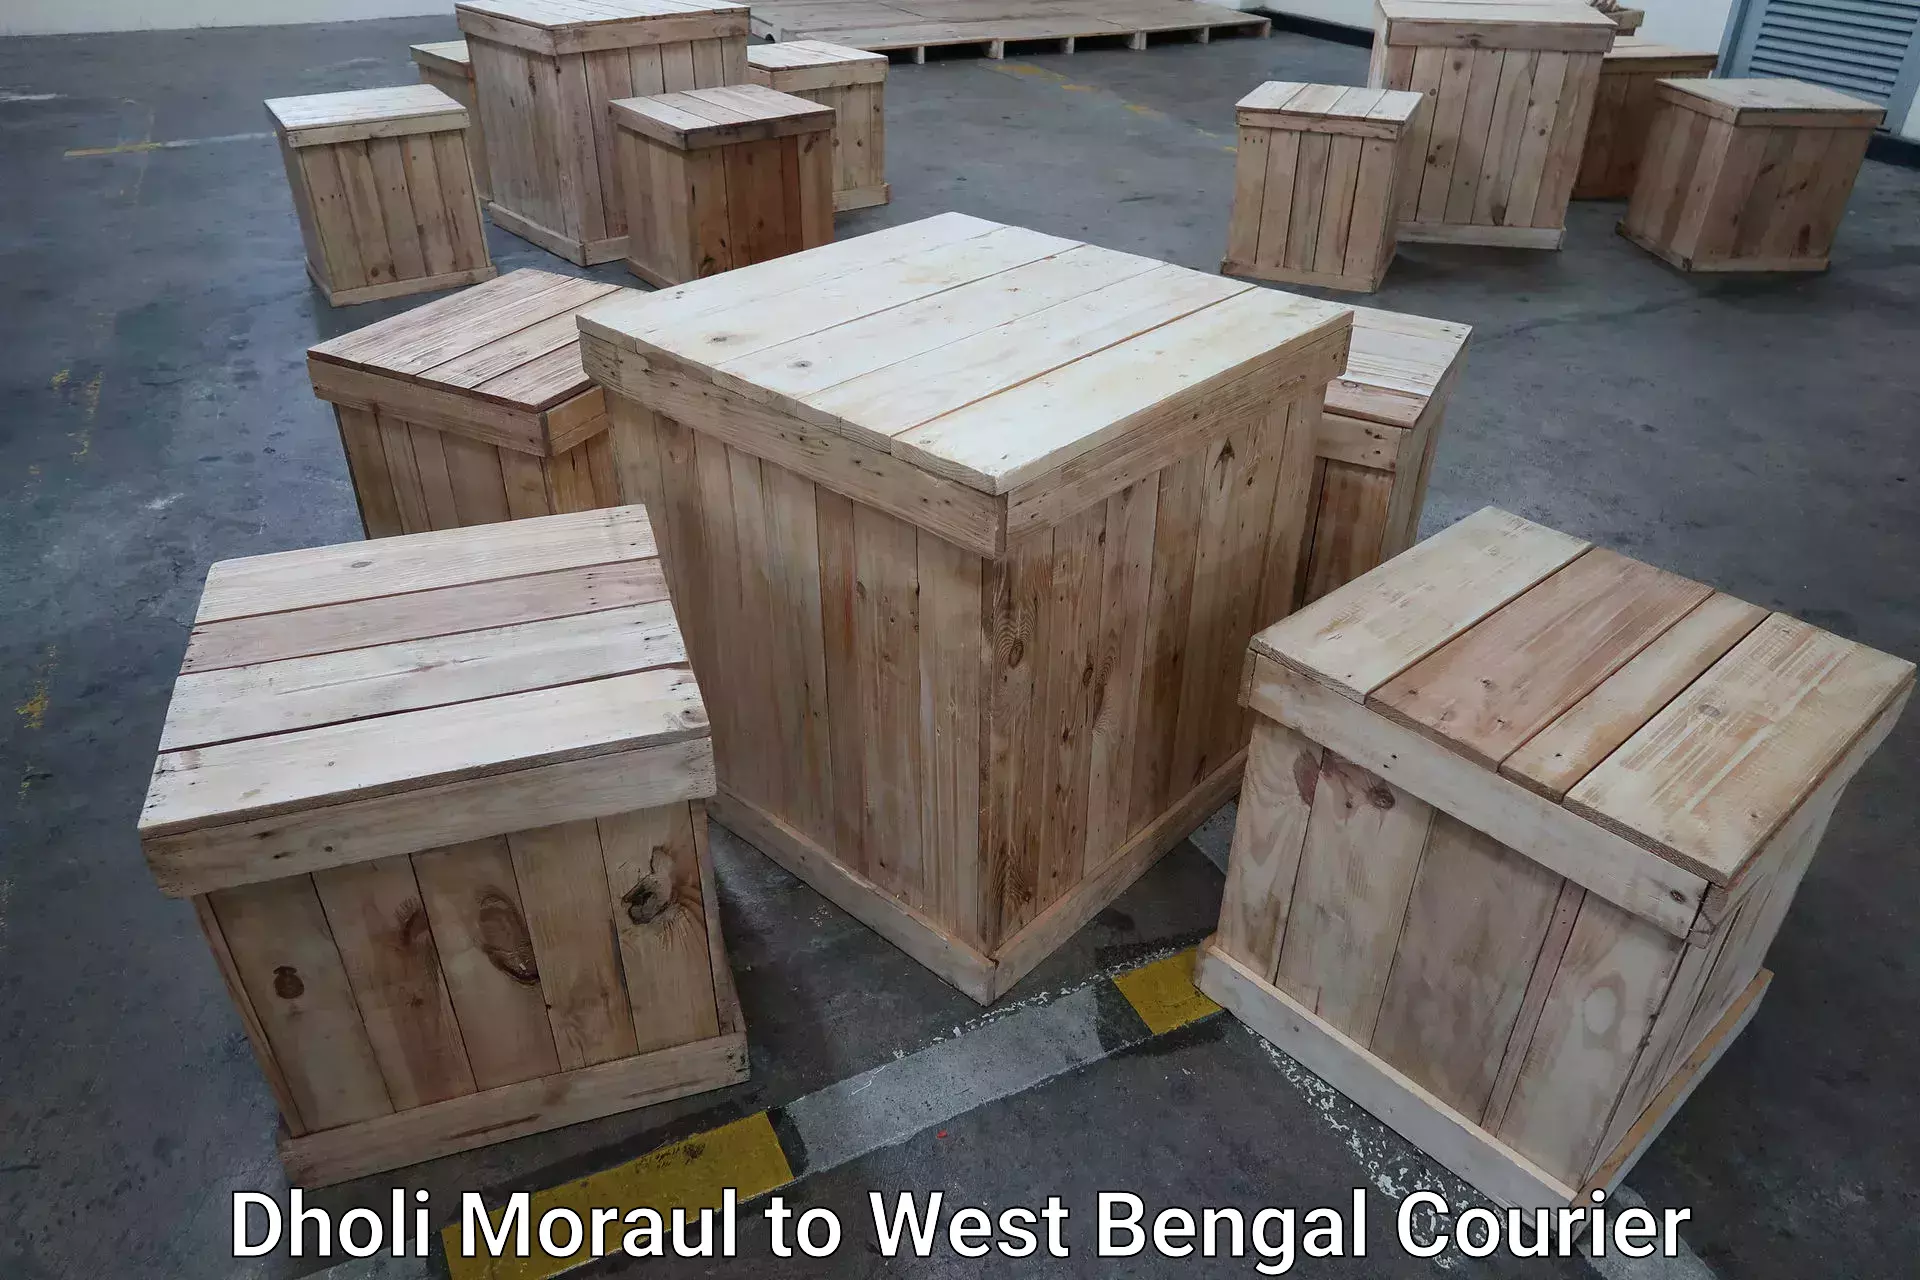 Baggage transport scheduler Dholi Moraul to Kolkata Port